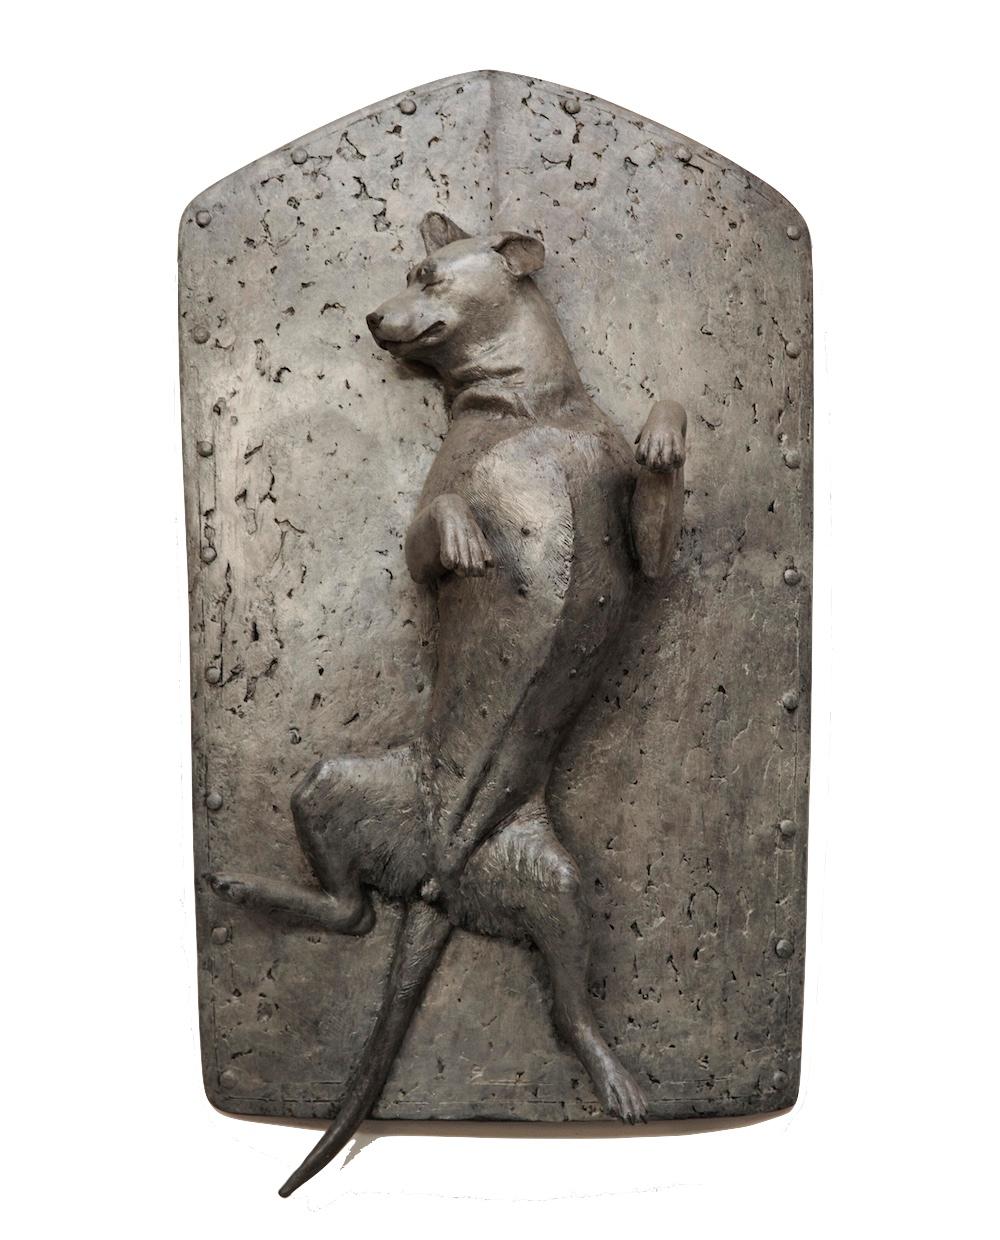 Sculpture: The Dog Series - My Companion no.4 - Gold Still-Life Sculpture by Li Shengzeng